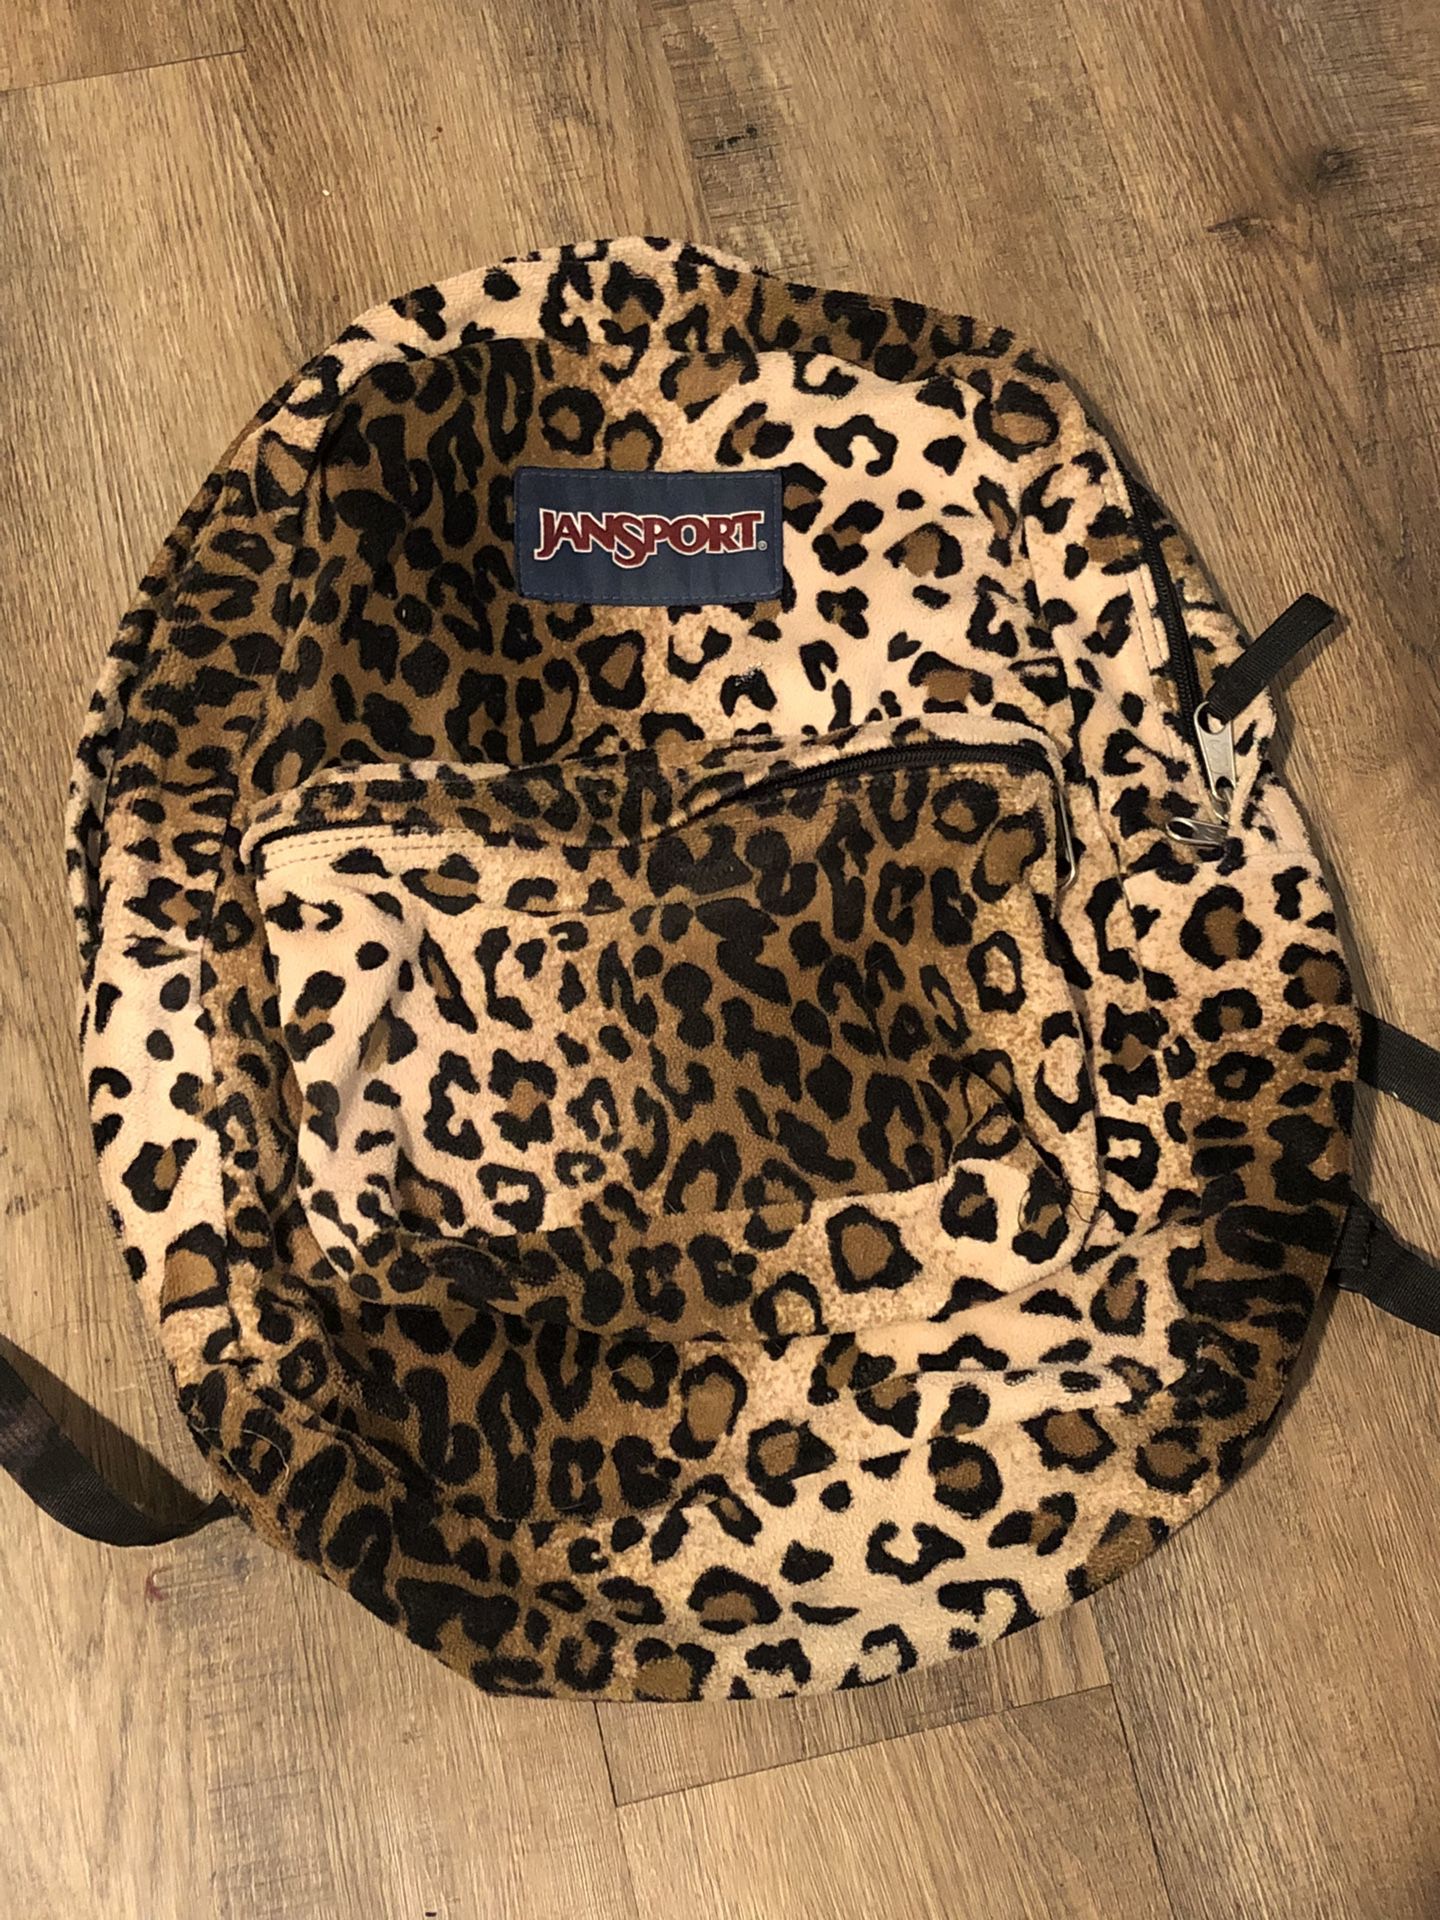 jansport leopard print backpack